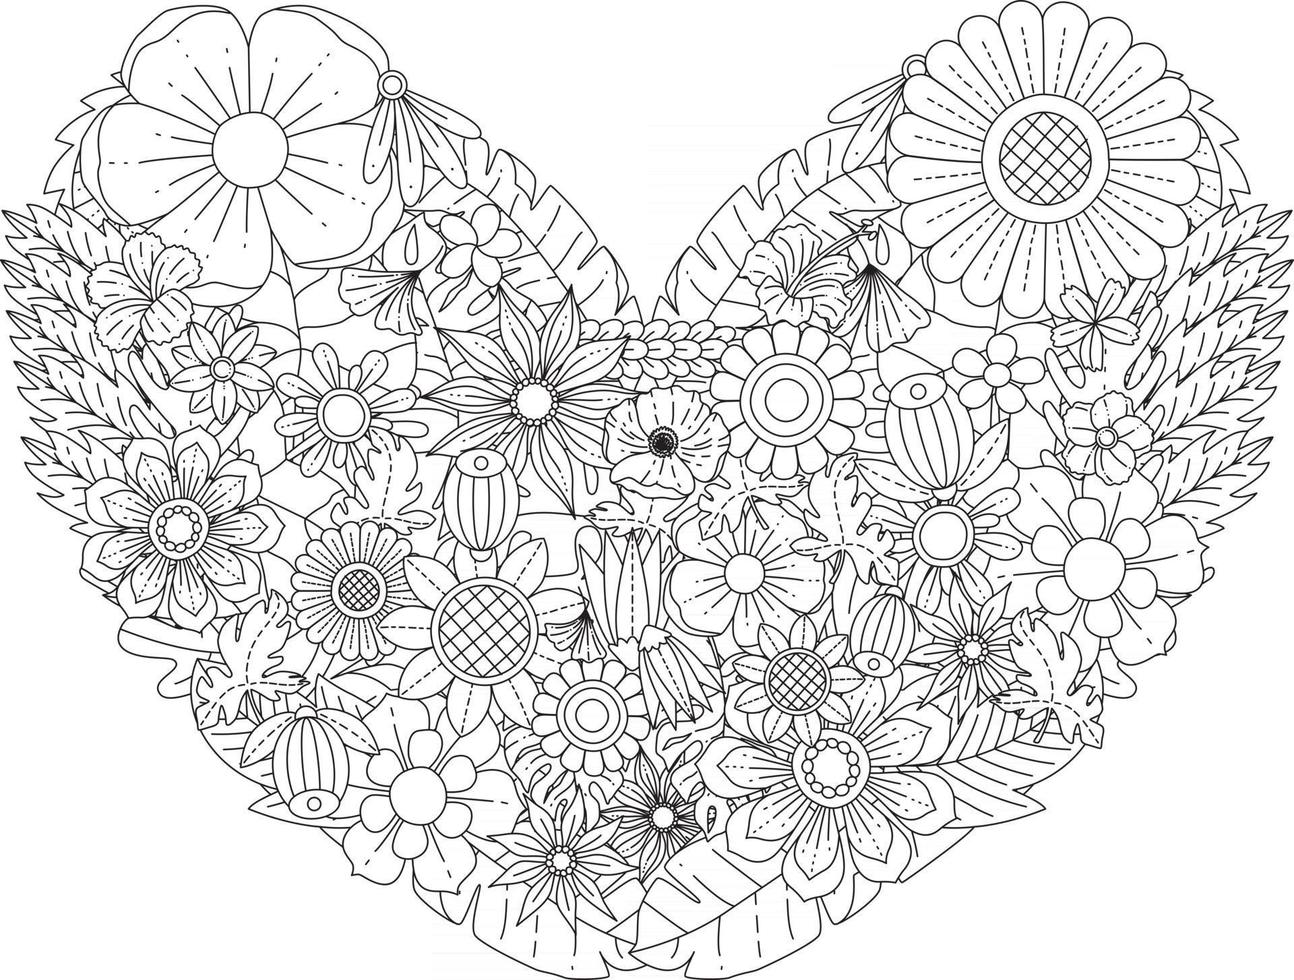 Mandala flores página para colorear para adultos y niños patrones de adornos florales orientales en forma de corazón ilustración vectorial vector